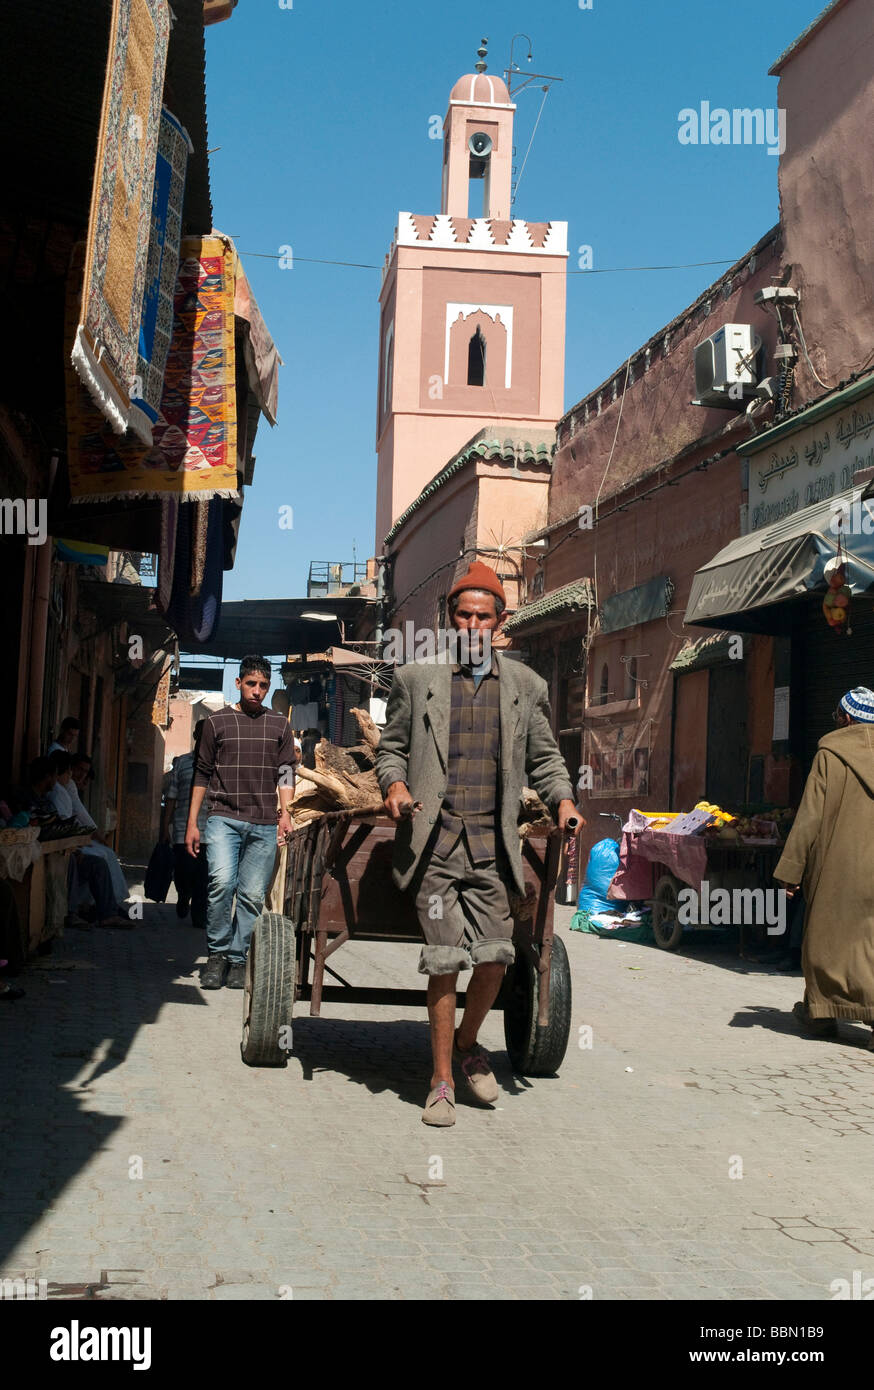 Uomo vecchio con un carrello di trasporto o carrello, scene di strada nella città vecchia, della Medina di Marrakech, Marocco, Africa Foto Stock